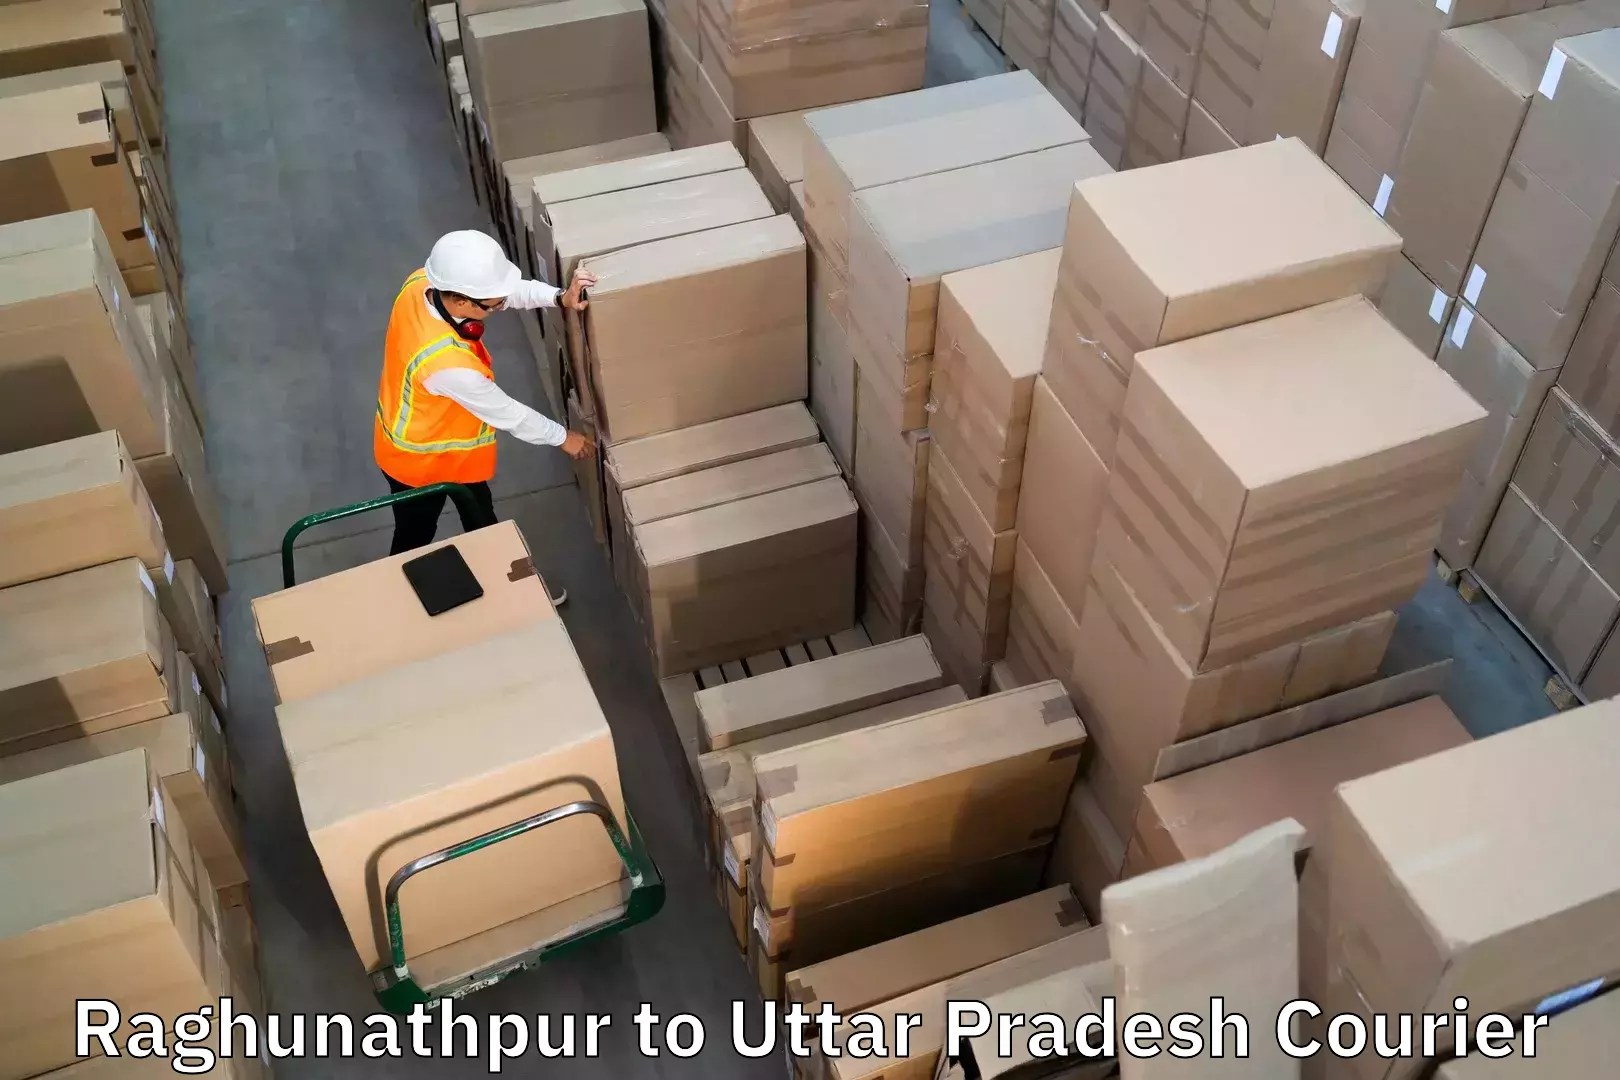 Baggage transport cost Raghunathpur to Chunar